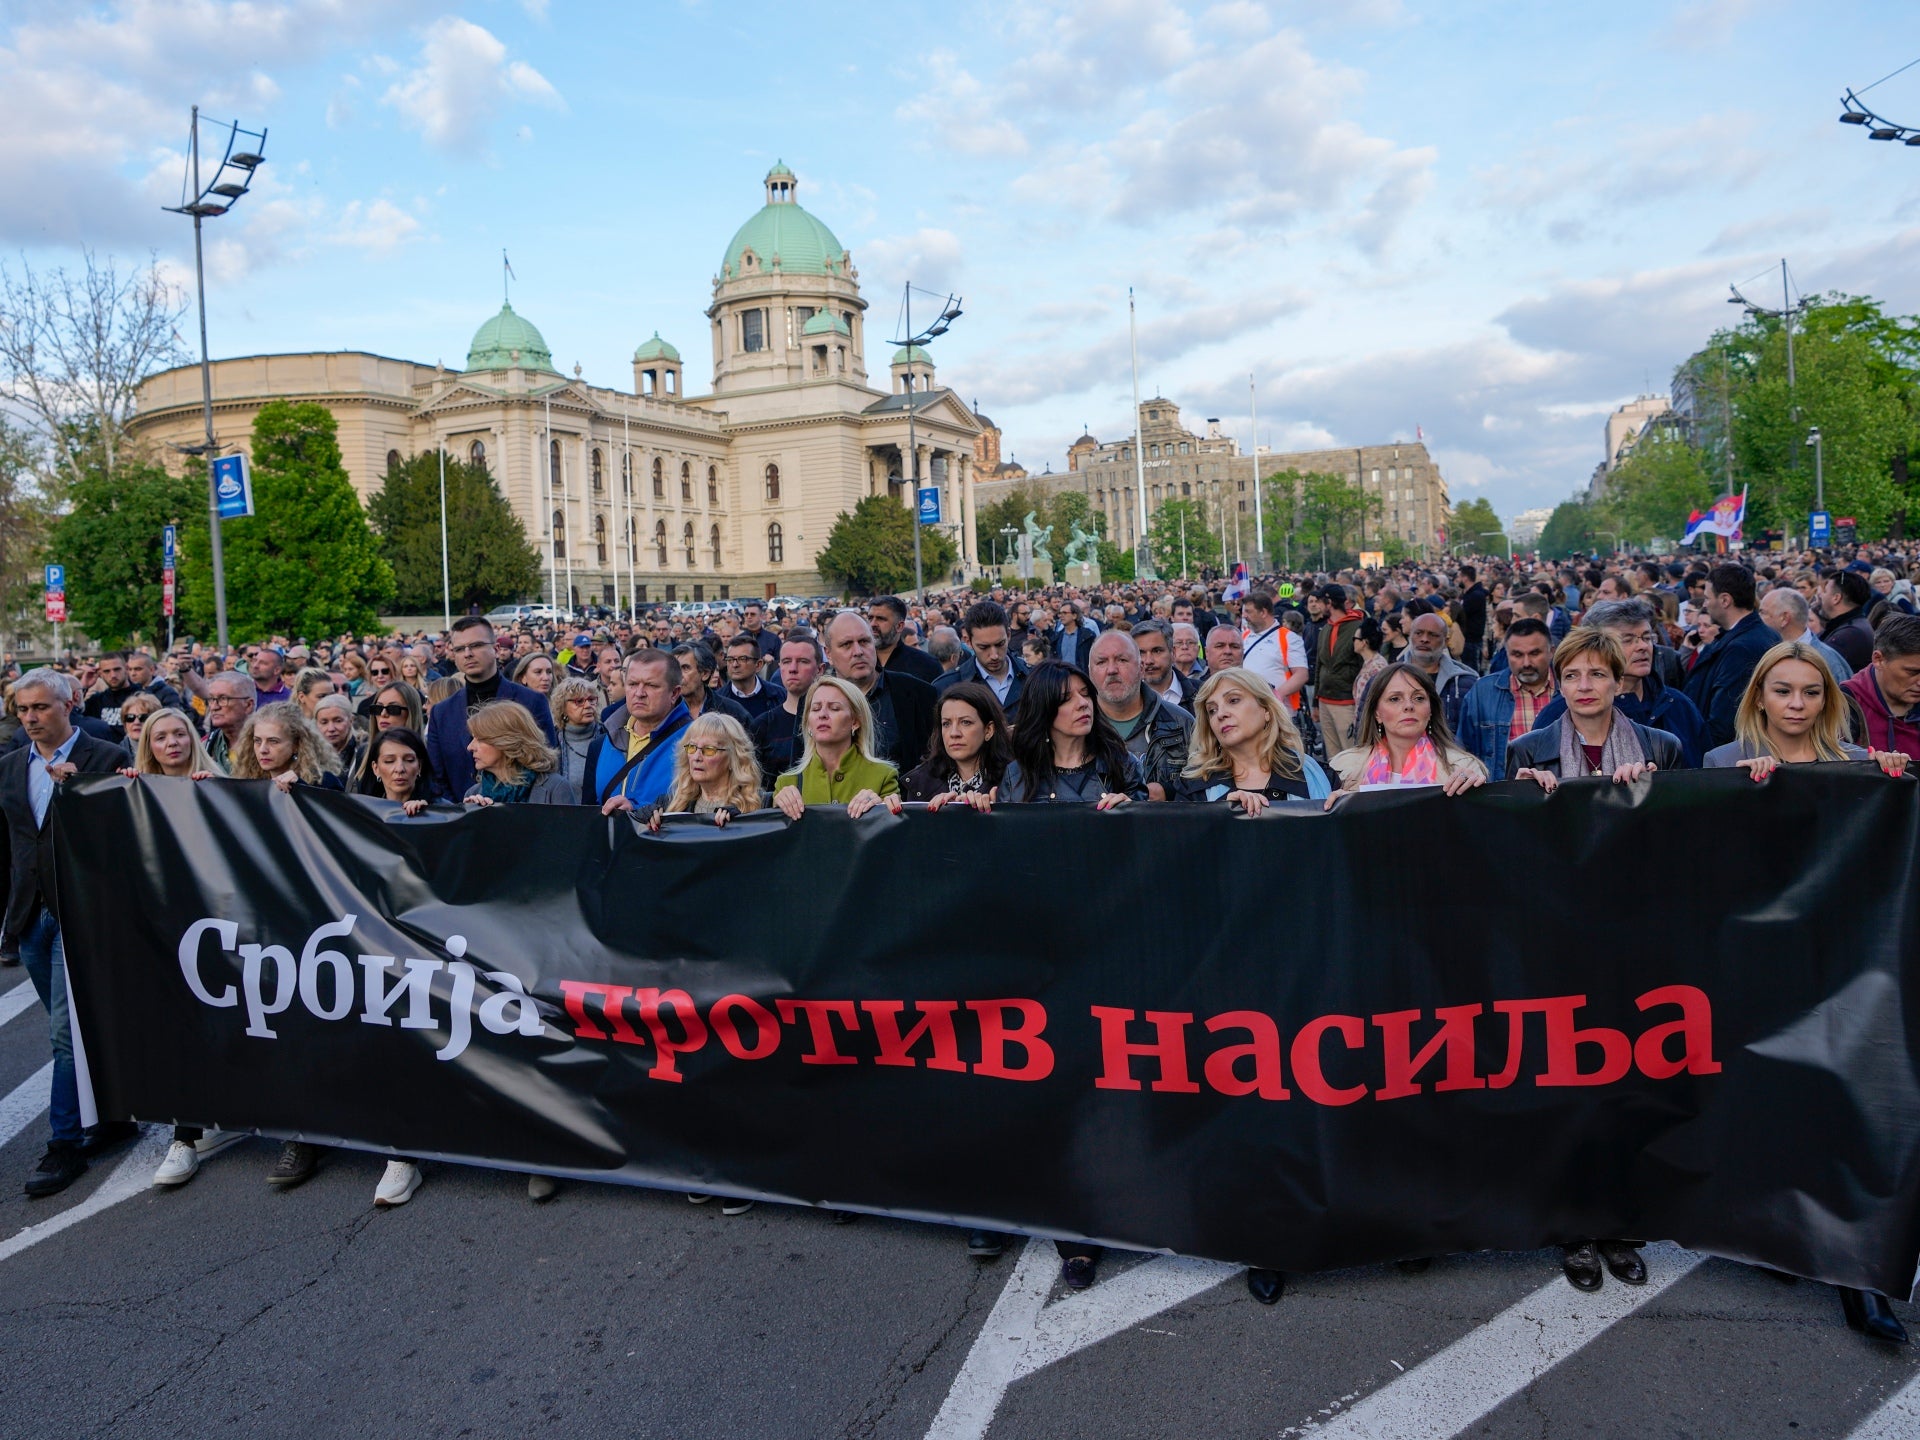 Após dois tiroteios em massa, sérvios protestam contra a violência